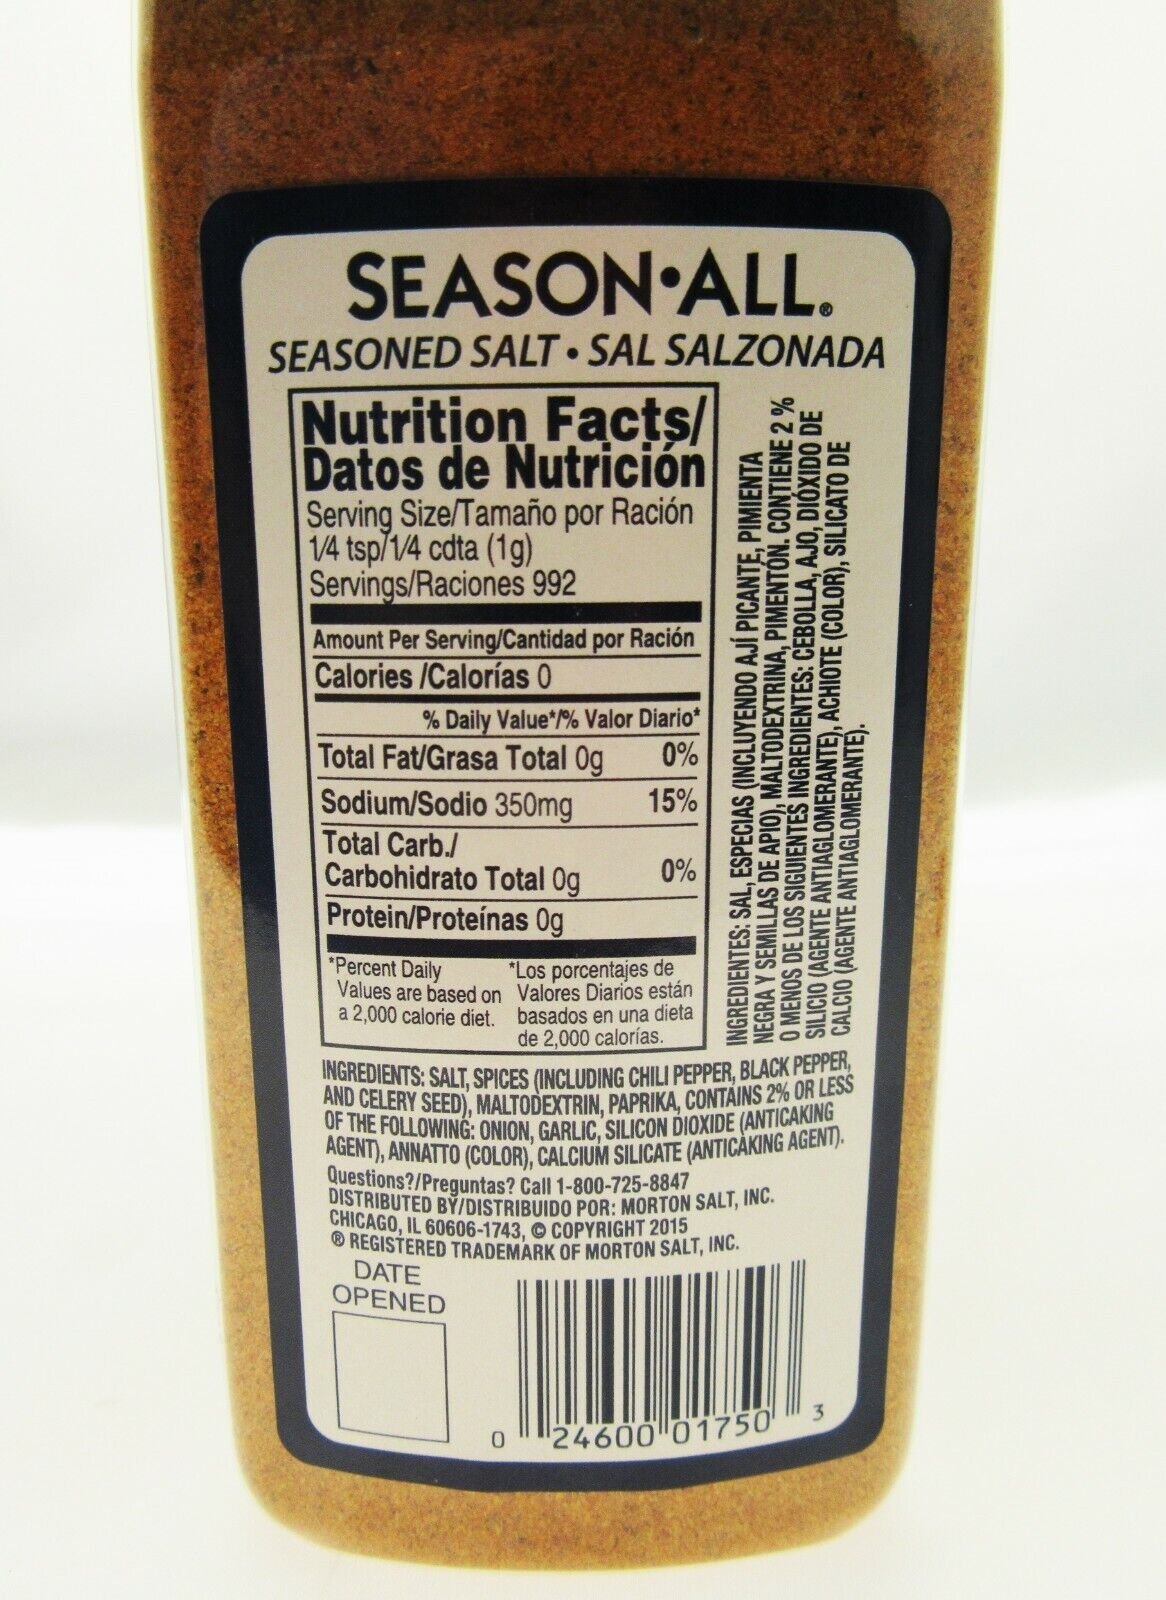 Morton Season All Seasoned Salt, Pepper, Salt, Spices & Seasonings